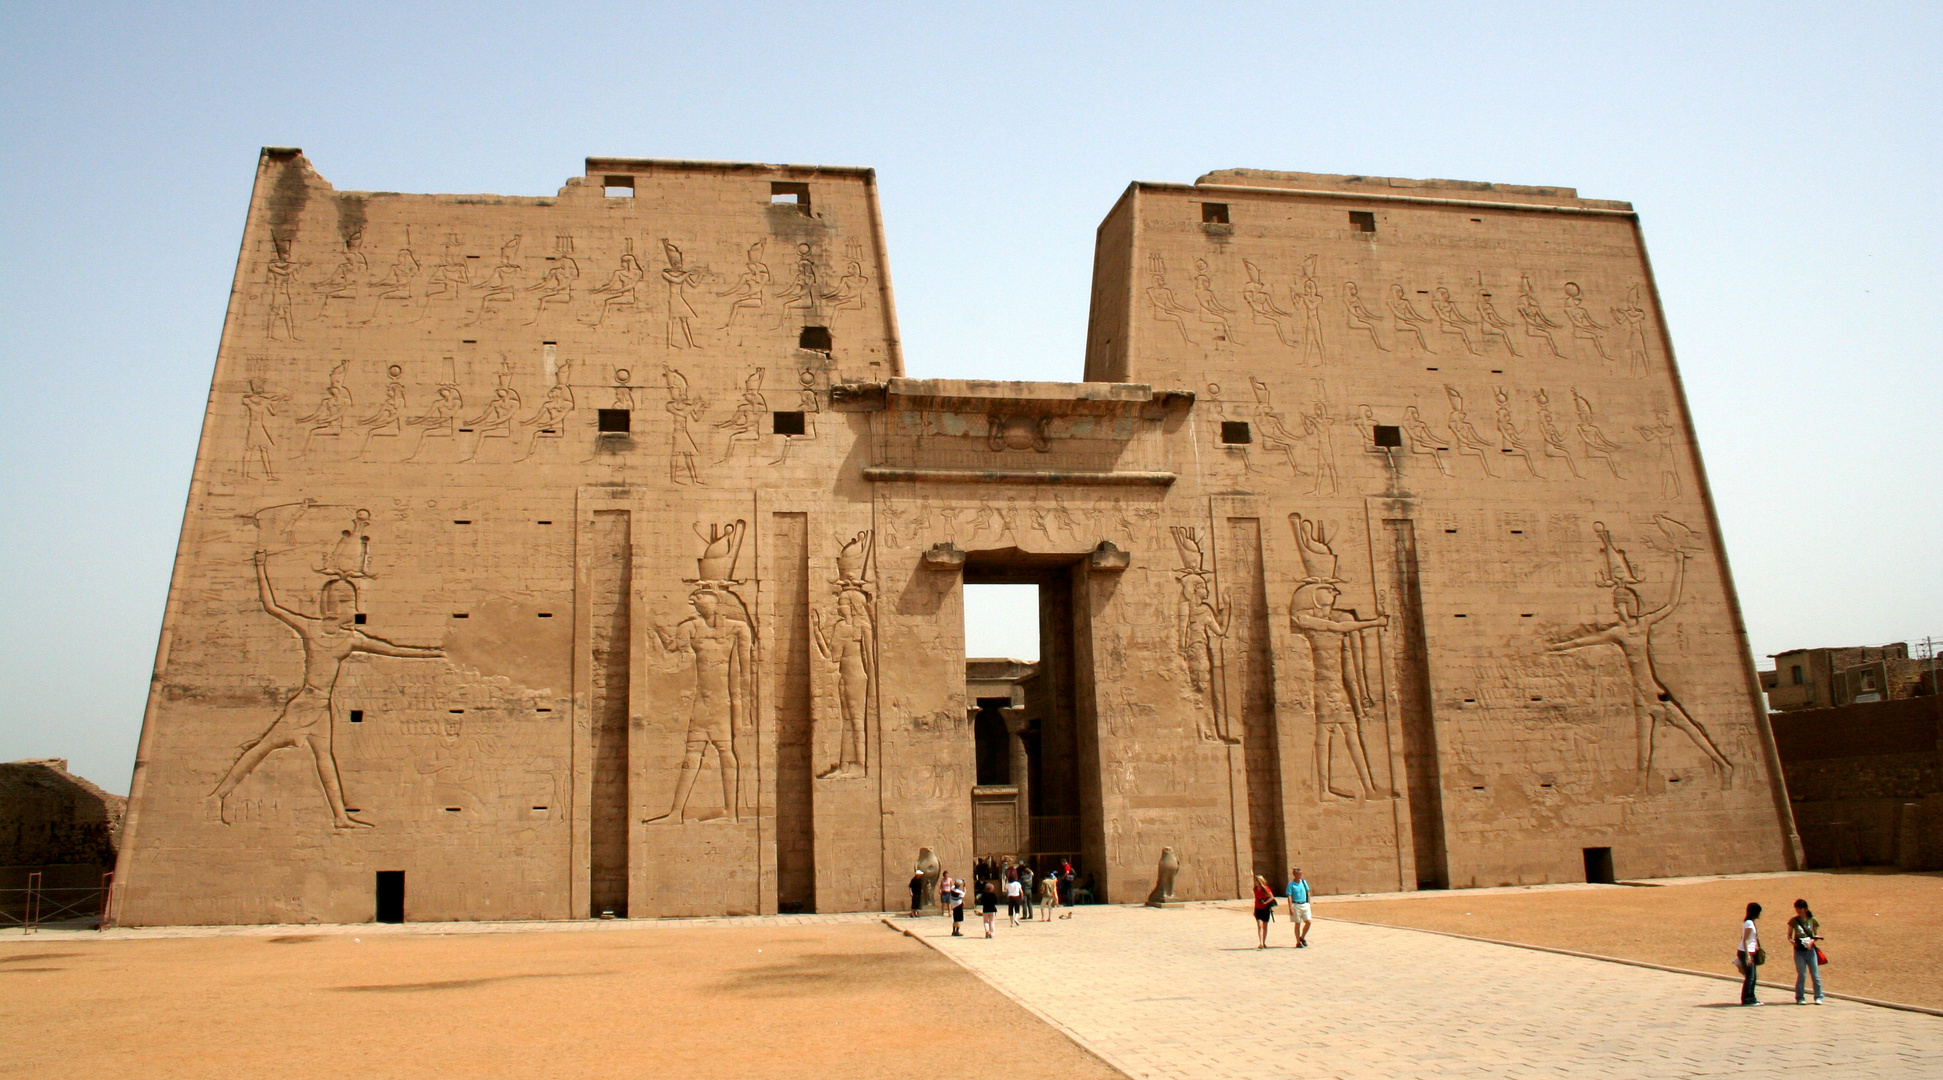 Horus Tempel - 2007 (1)